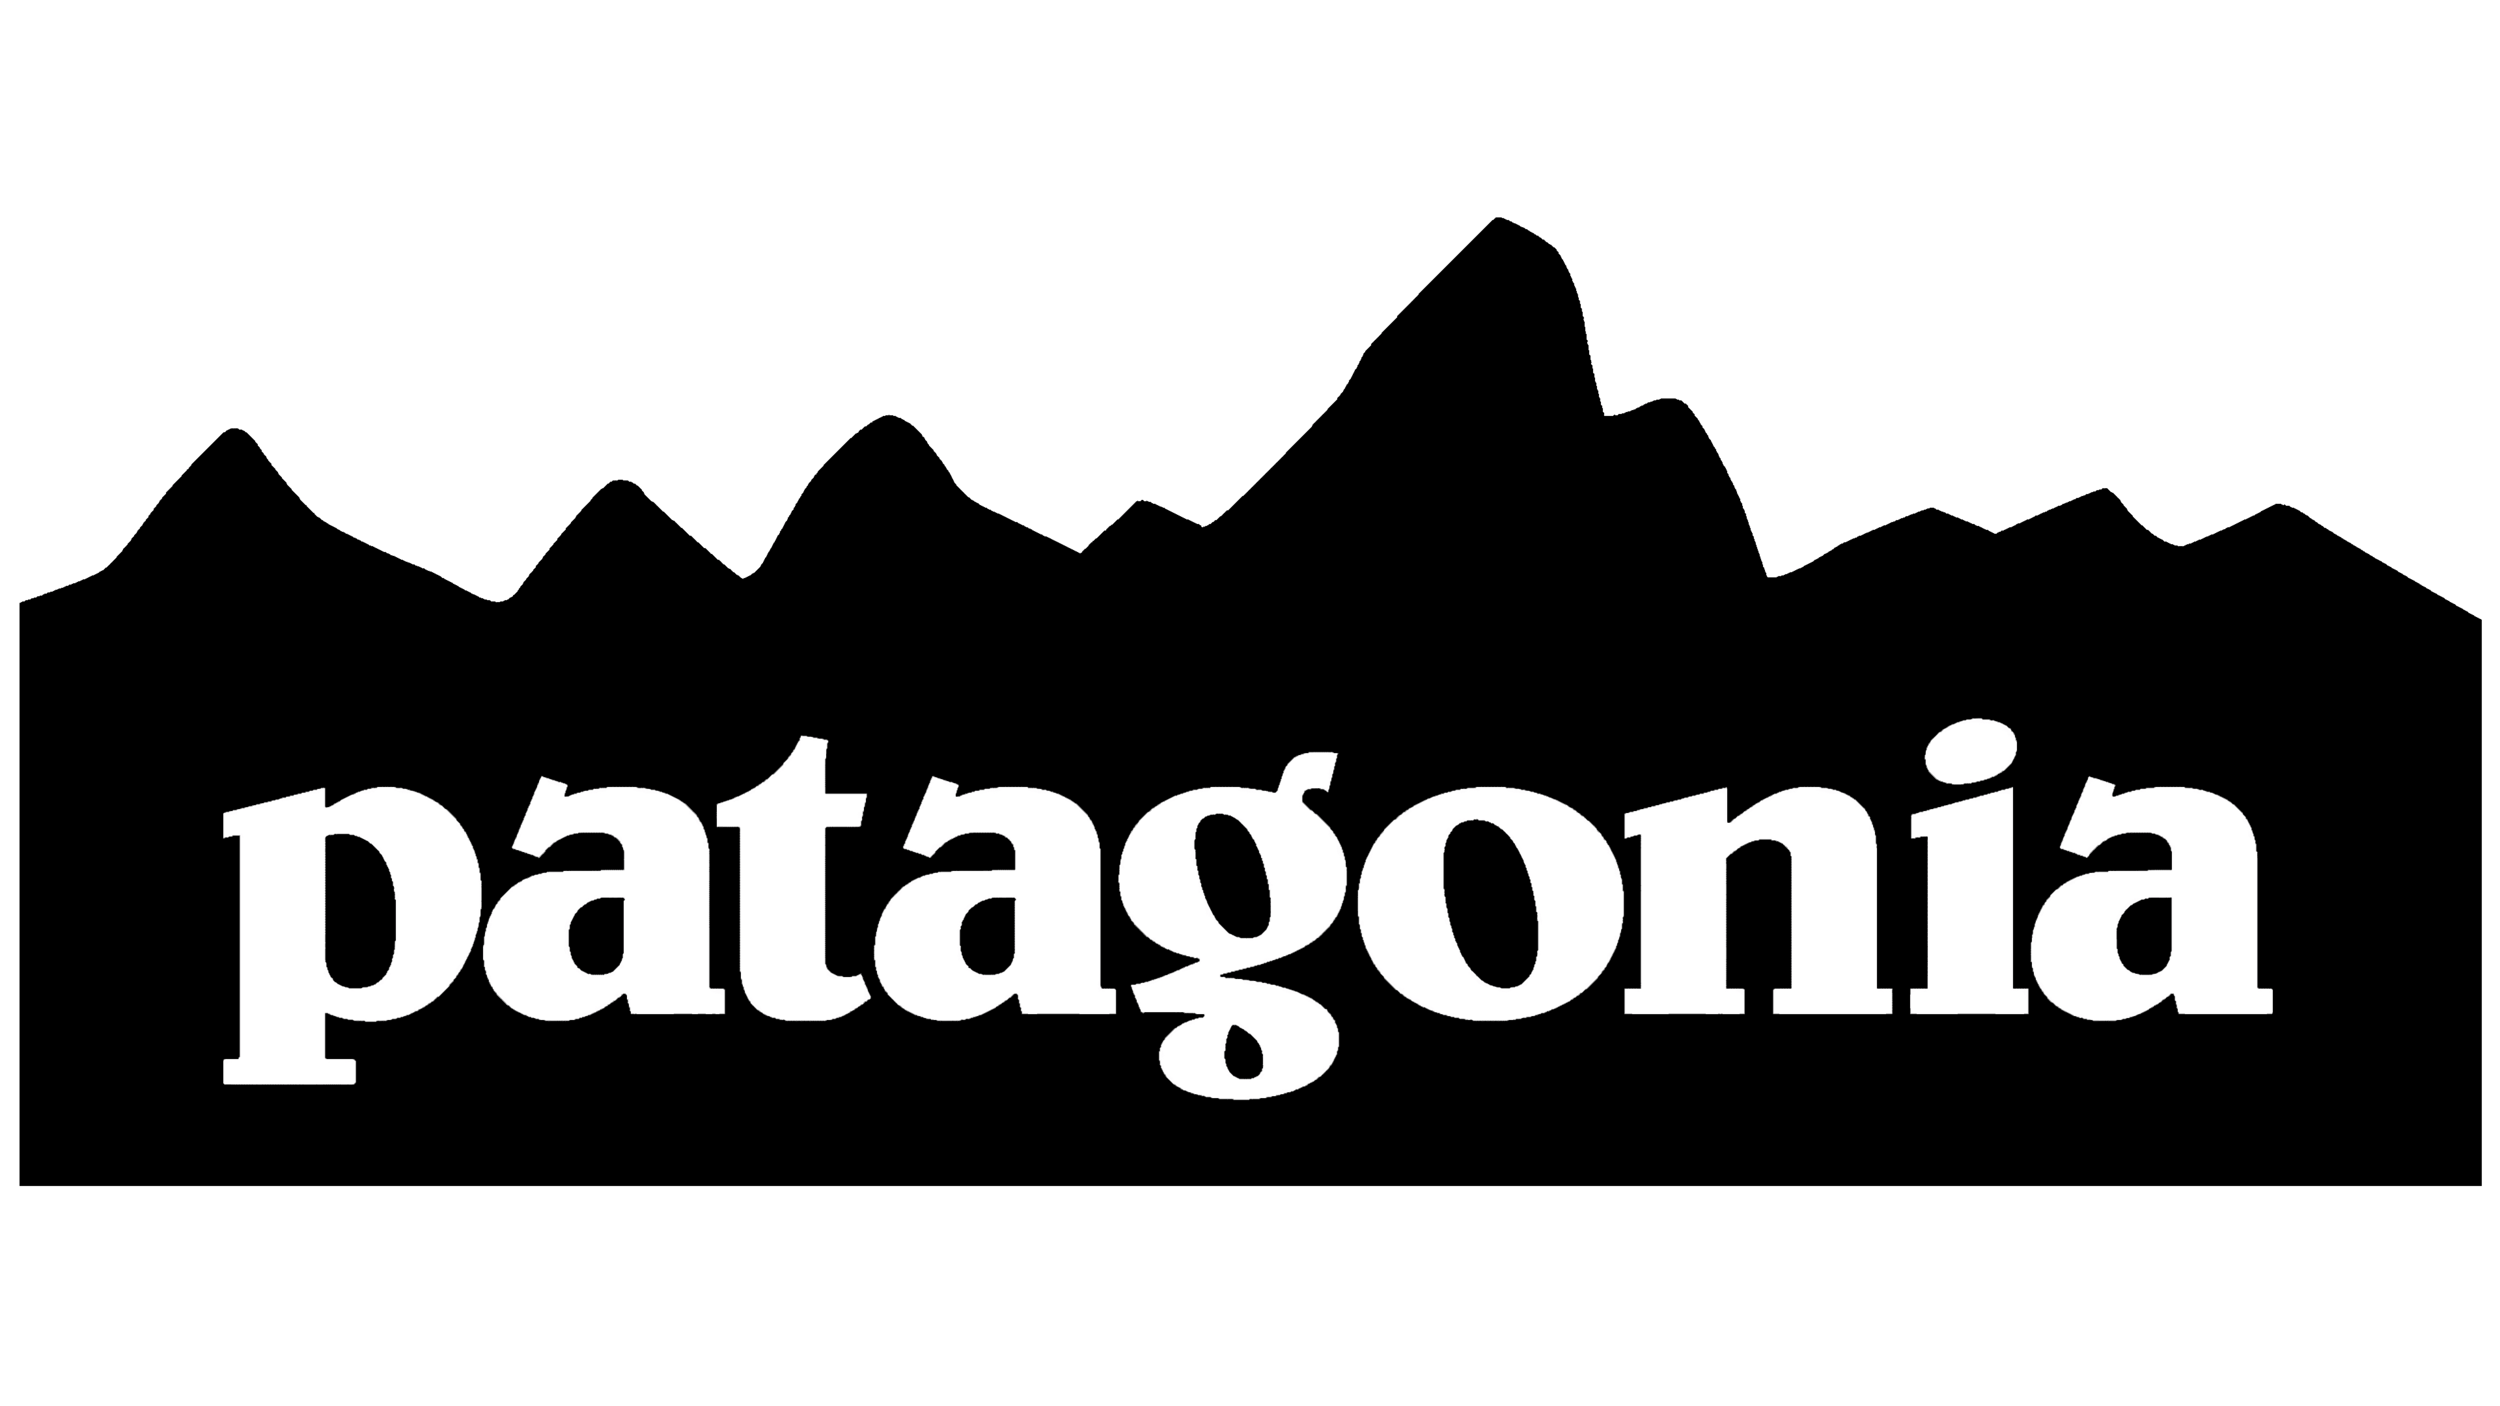 Patagonia-Mountain-logo.png